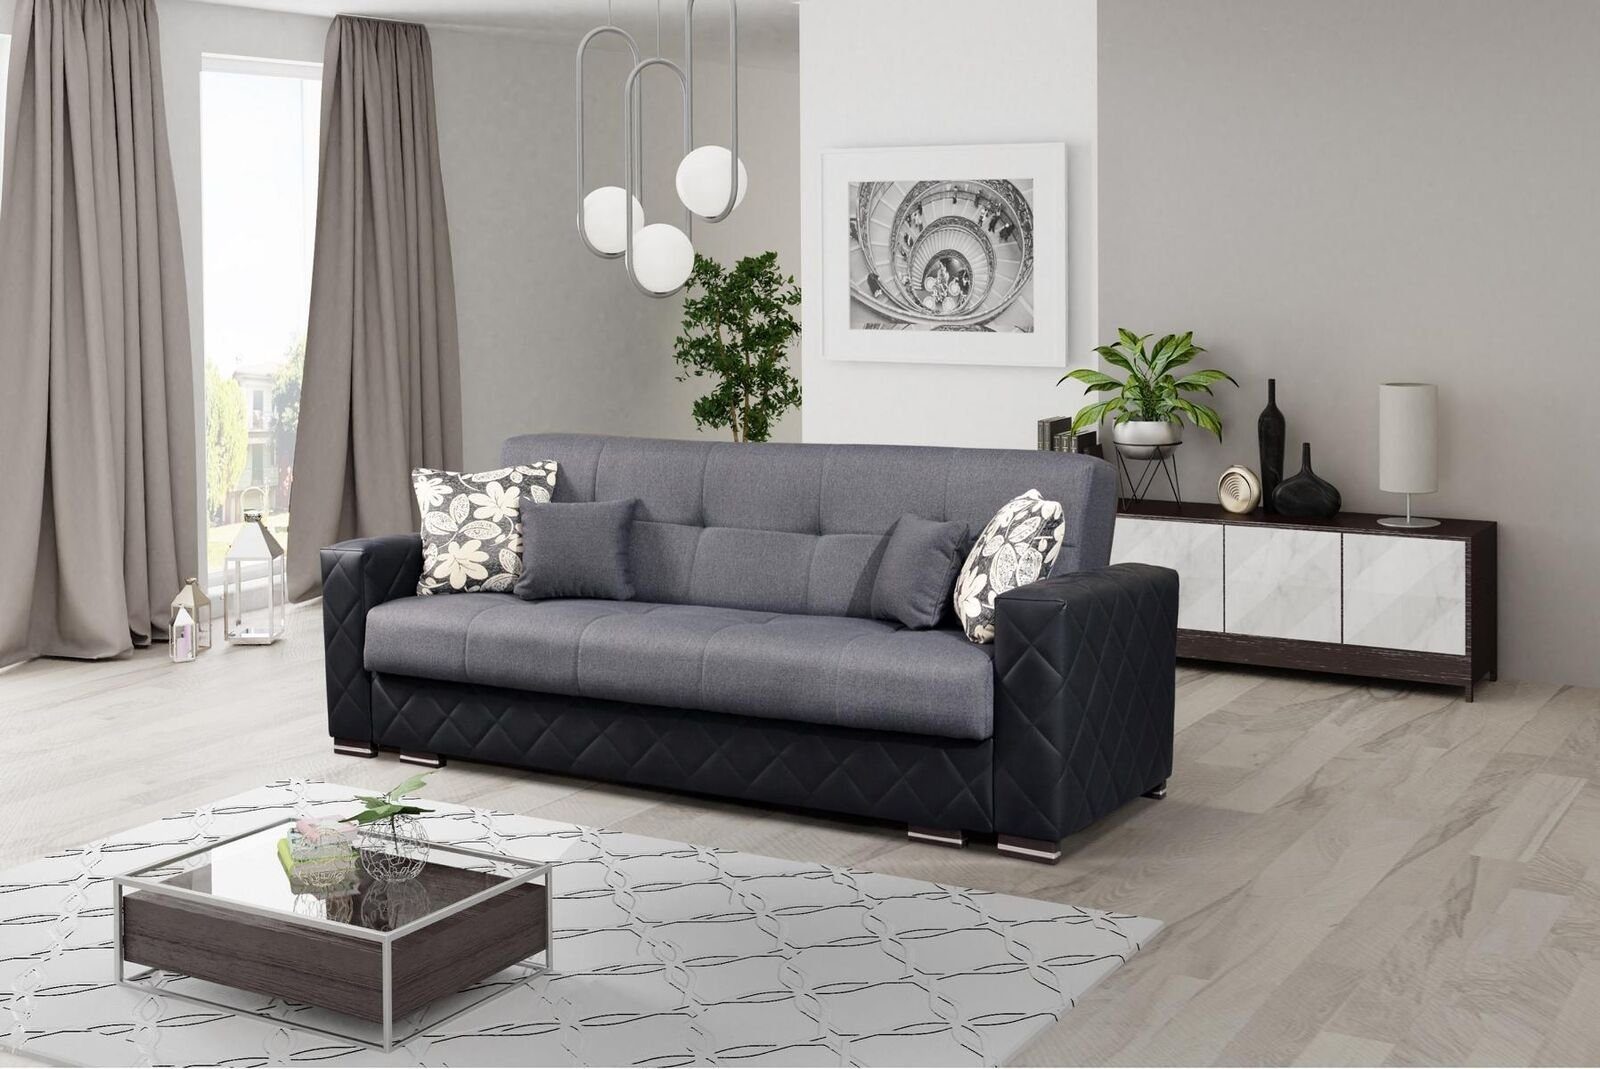 JVmoebel Sofa Edler Dreisitzer Grau-schwarz Polstermöbel Couch Neu, Made in Europe